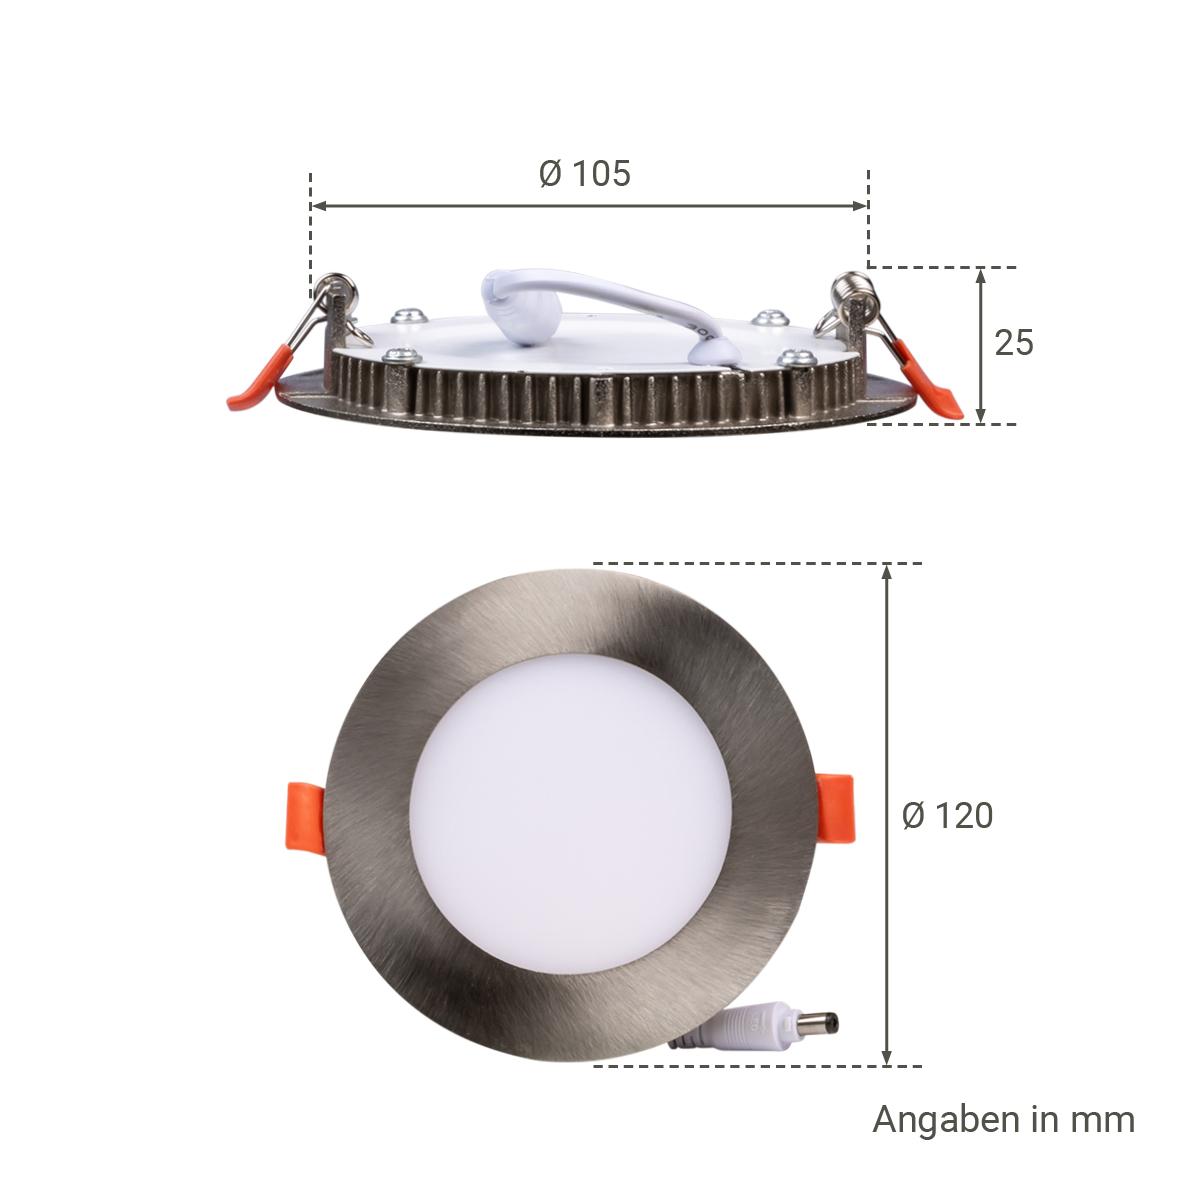 LED Panel Einbaustrahler rund silber - Lichtfarbe: Neutralweiß 4000K dimmbar - Ausführung: 6W Ø120mm Ausschnitt Ø105mm